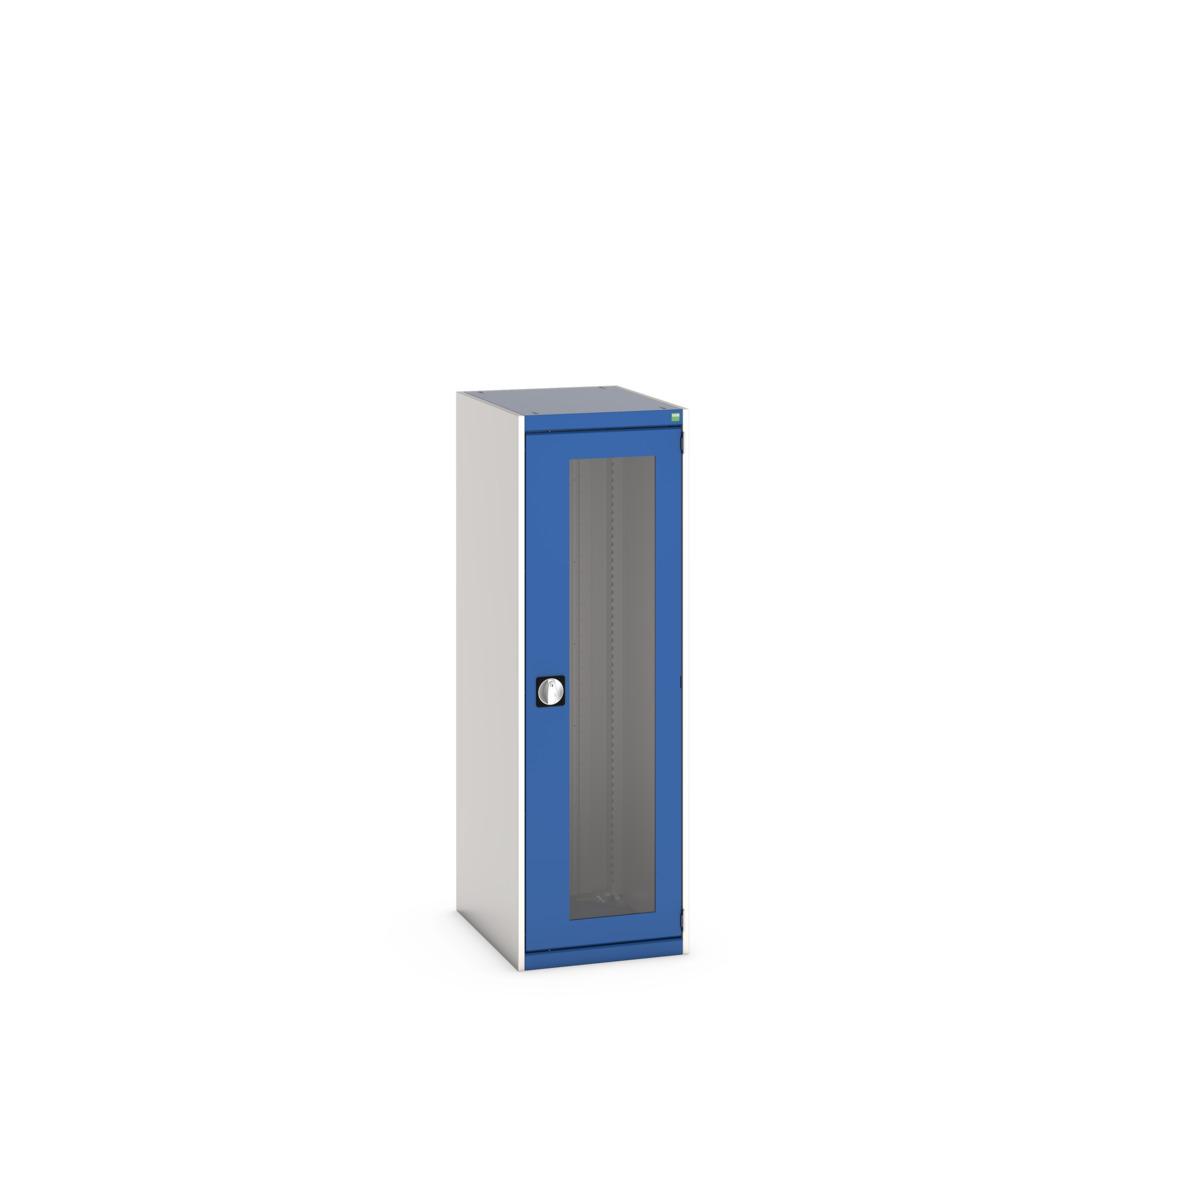 40018141.11V - cubio cupboard